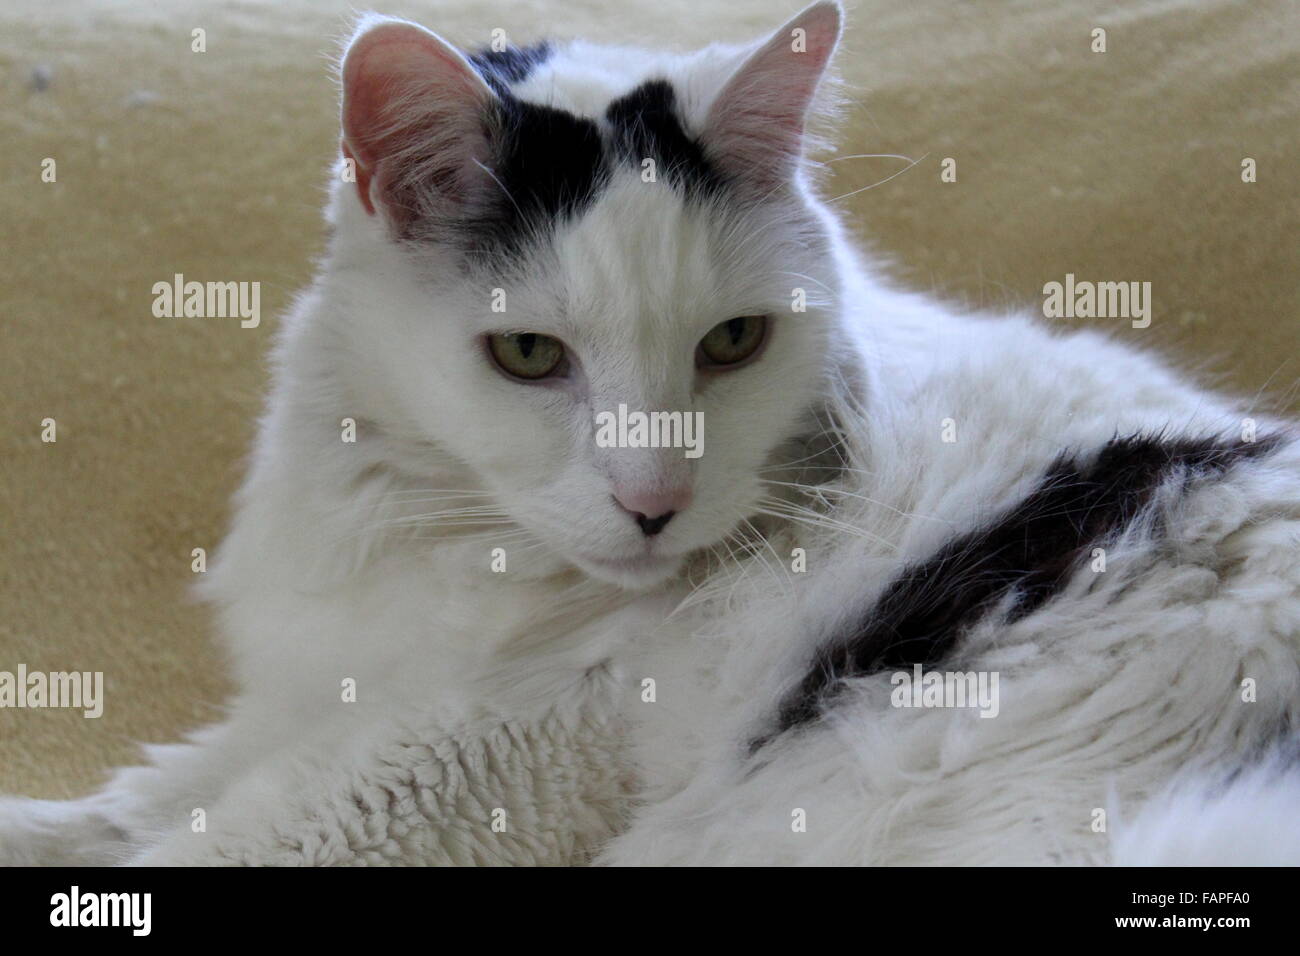 Bella immagine di gatto di salvataggio bianco e nero con capelli lunghi, occhi verdi luminosi coperti in grandi macchie che si adagia su morbida coperta sul divano. Foto Stock